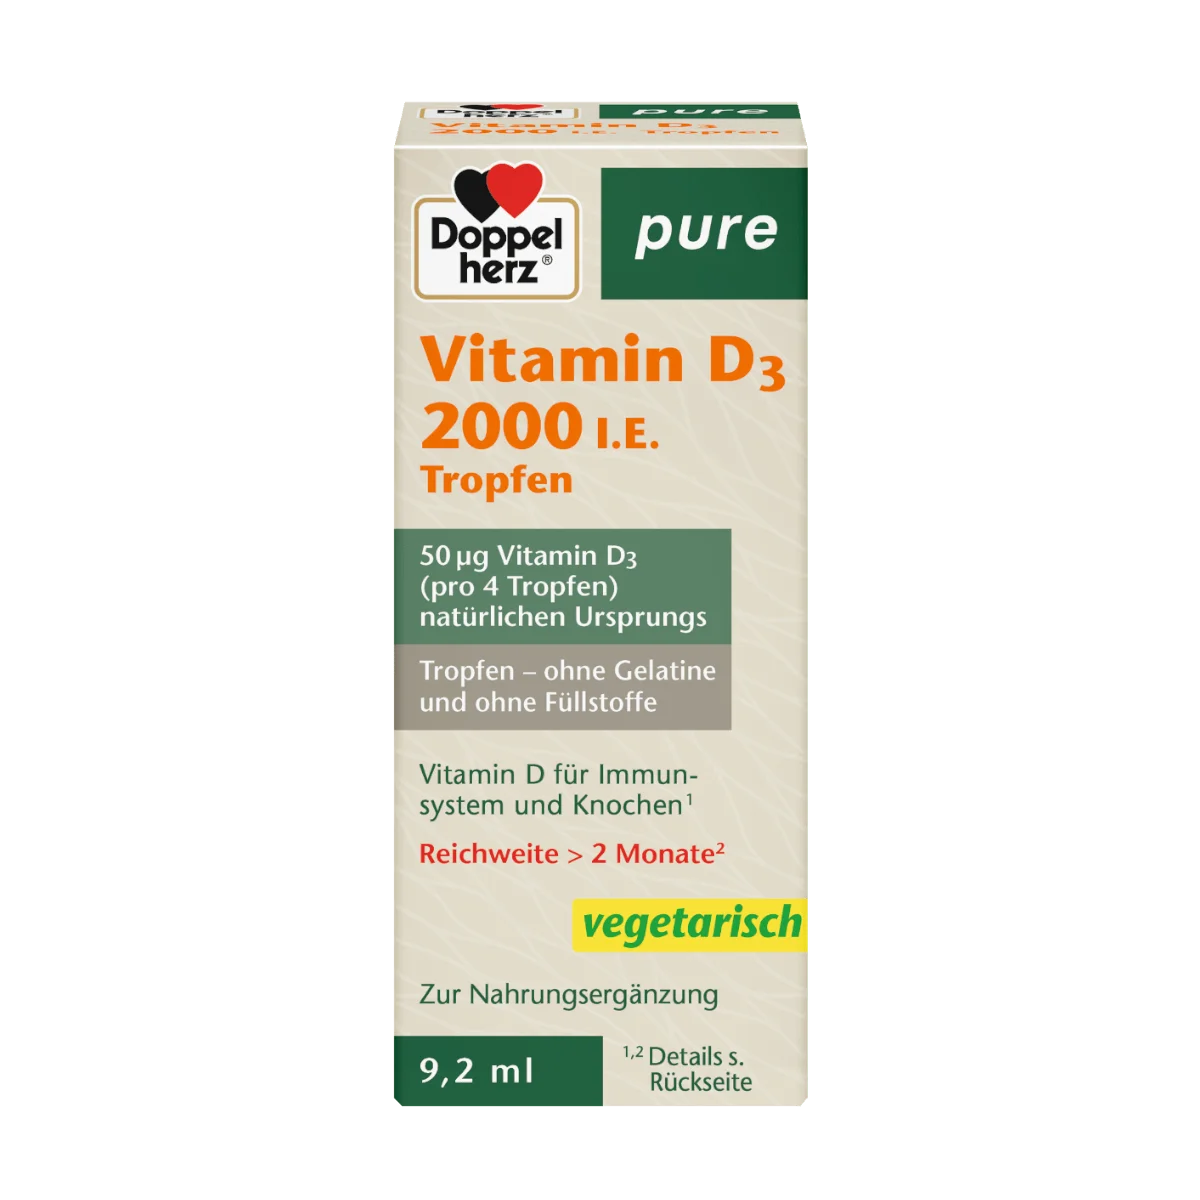 Doppelherz pure Vitamin D 3 2000 I.E. Tropfen 9,2 ml